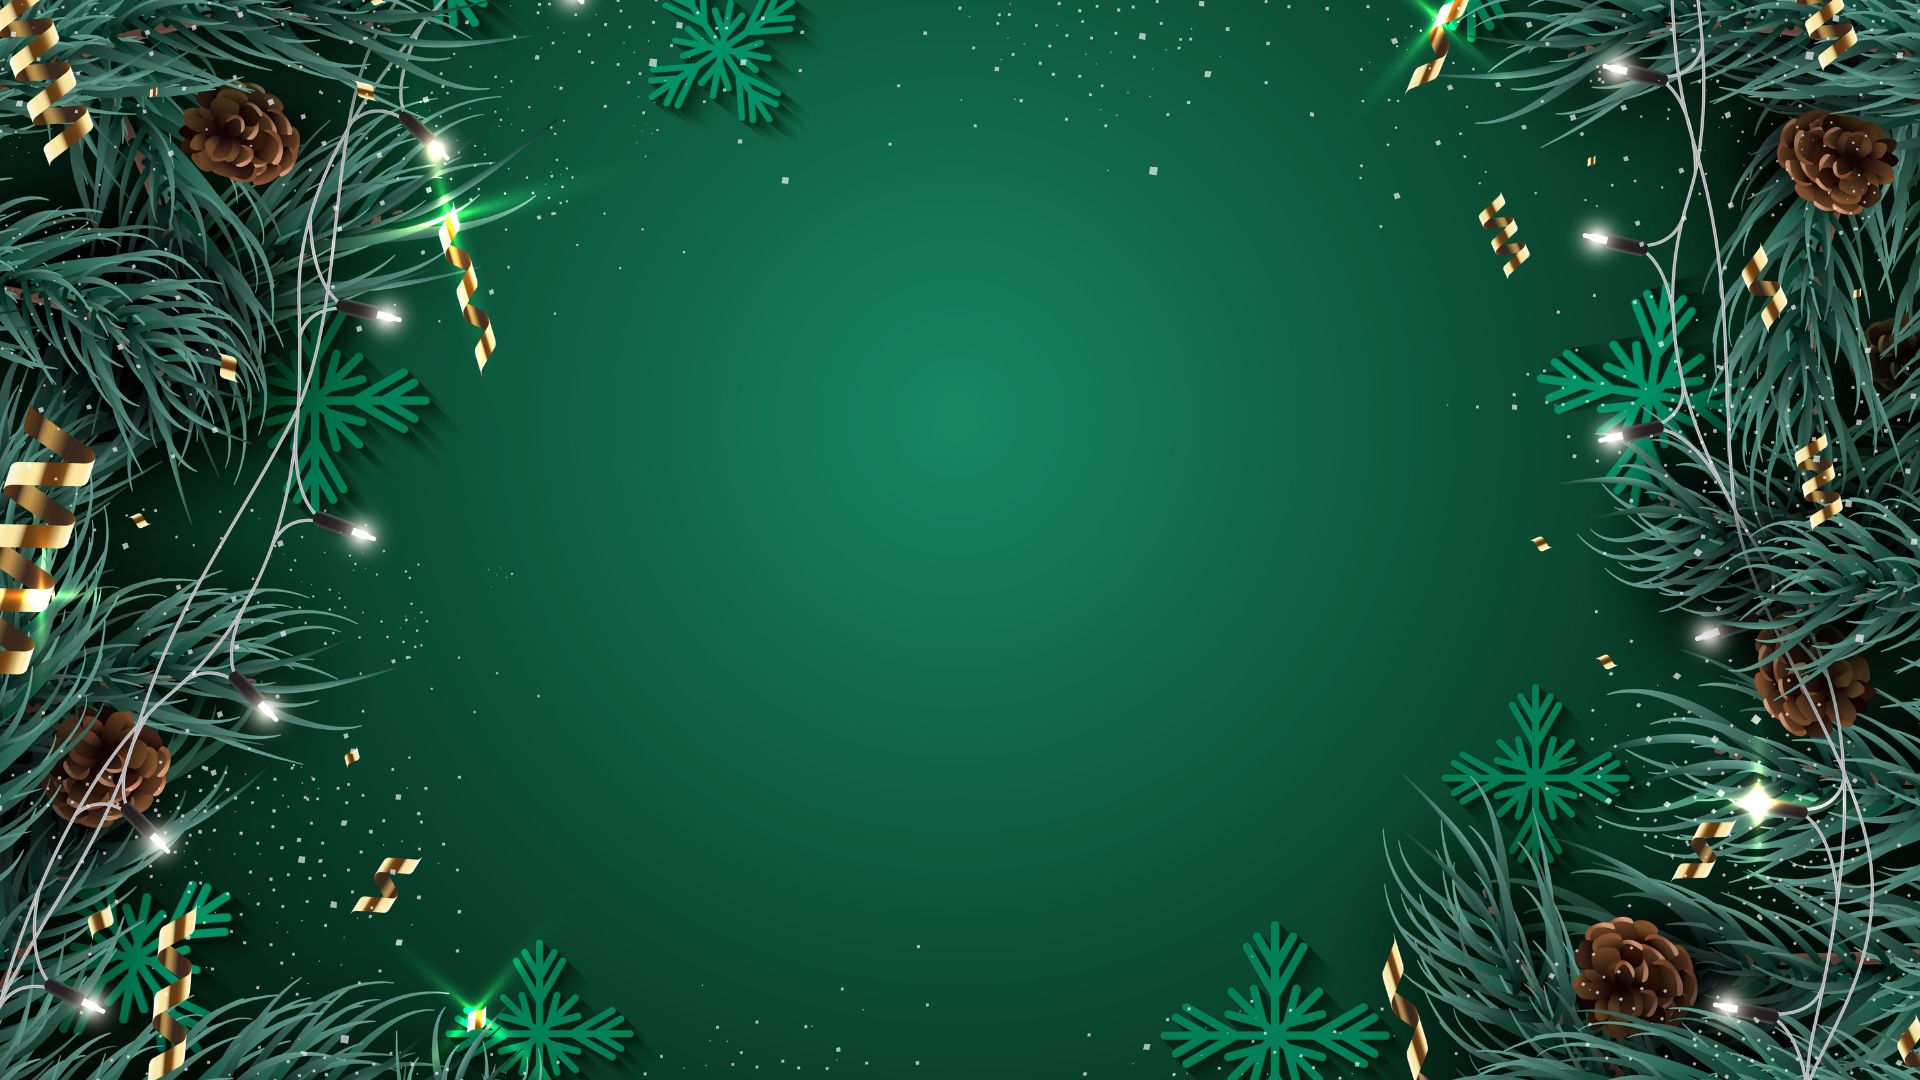 Imagem de fundo verde. Nas laterais esquerda e direita da tela, ramos de árvore natalida decorados com luzes de pisca pisca.